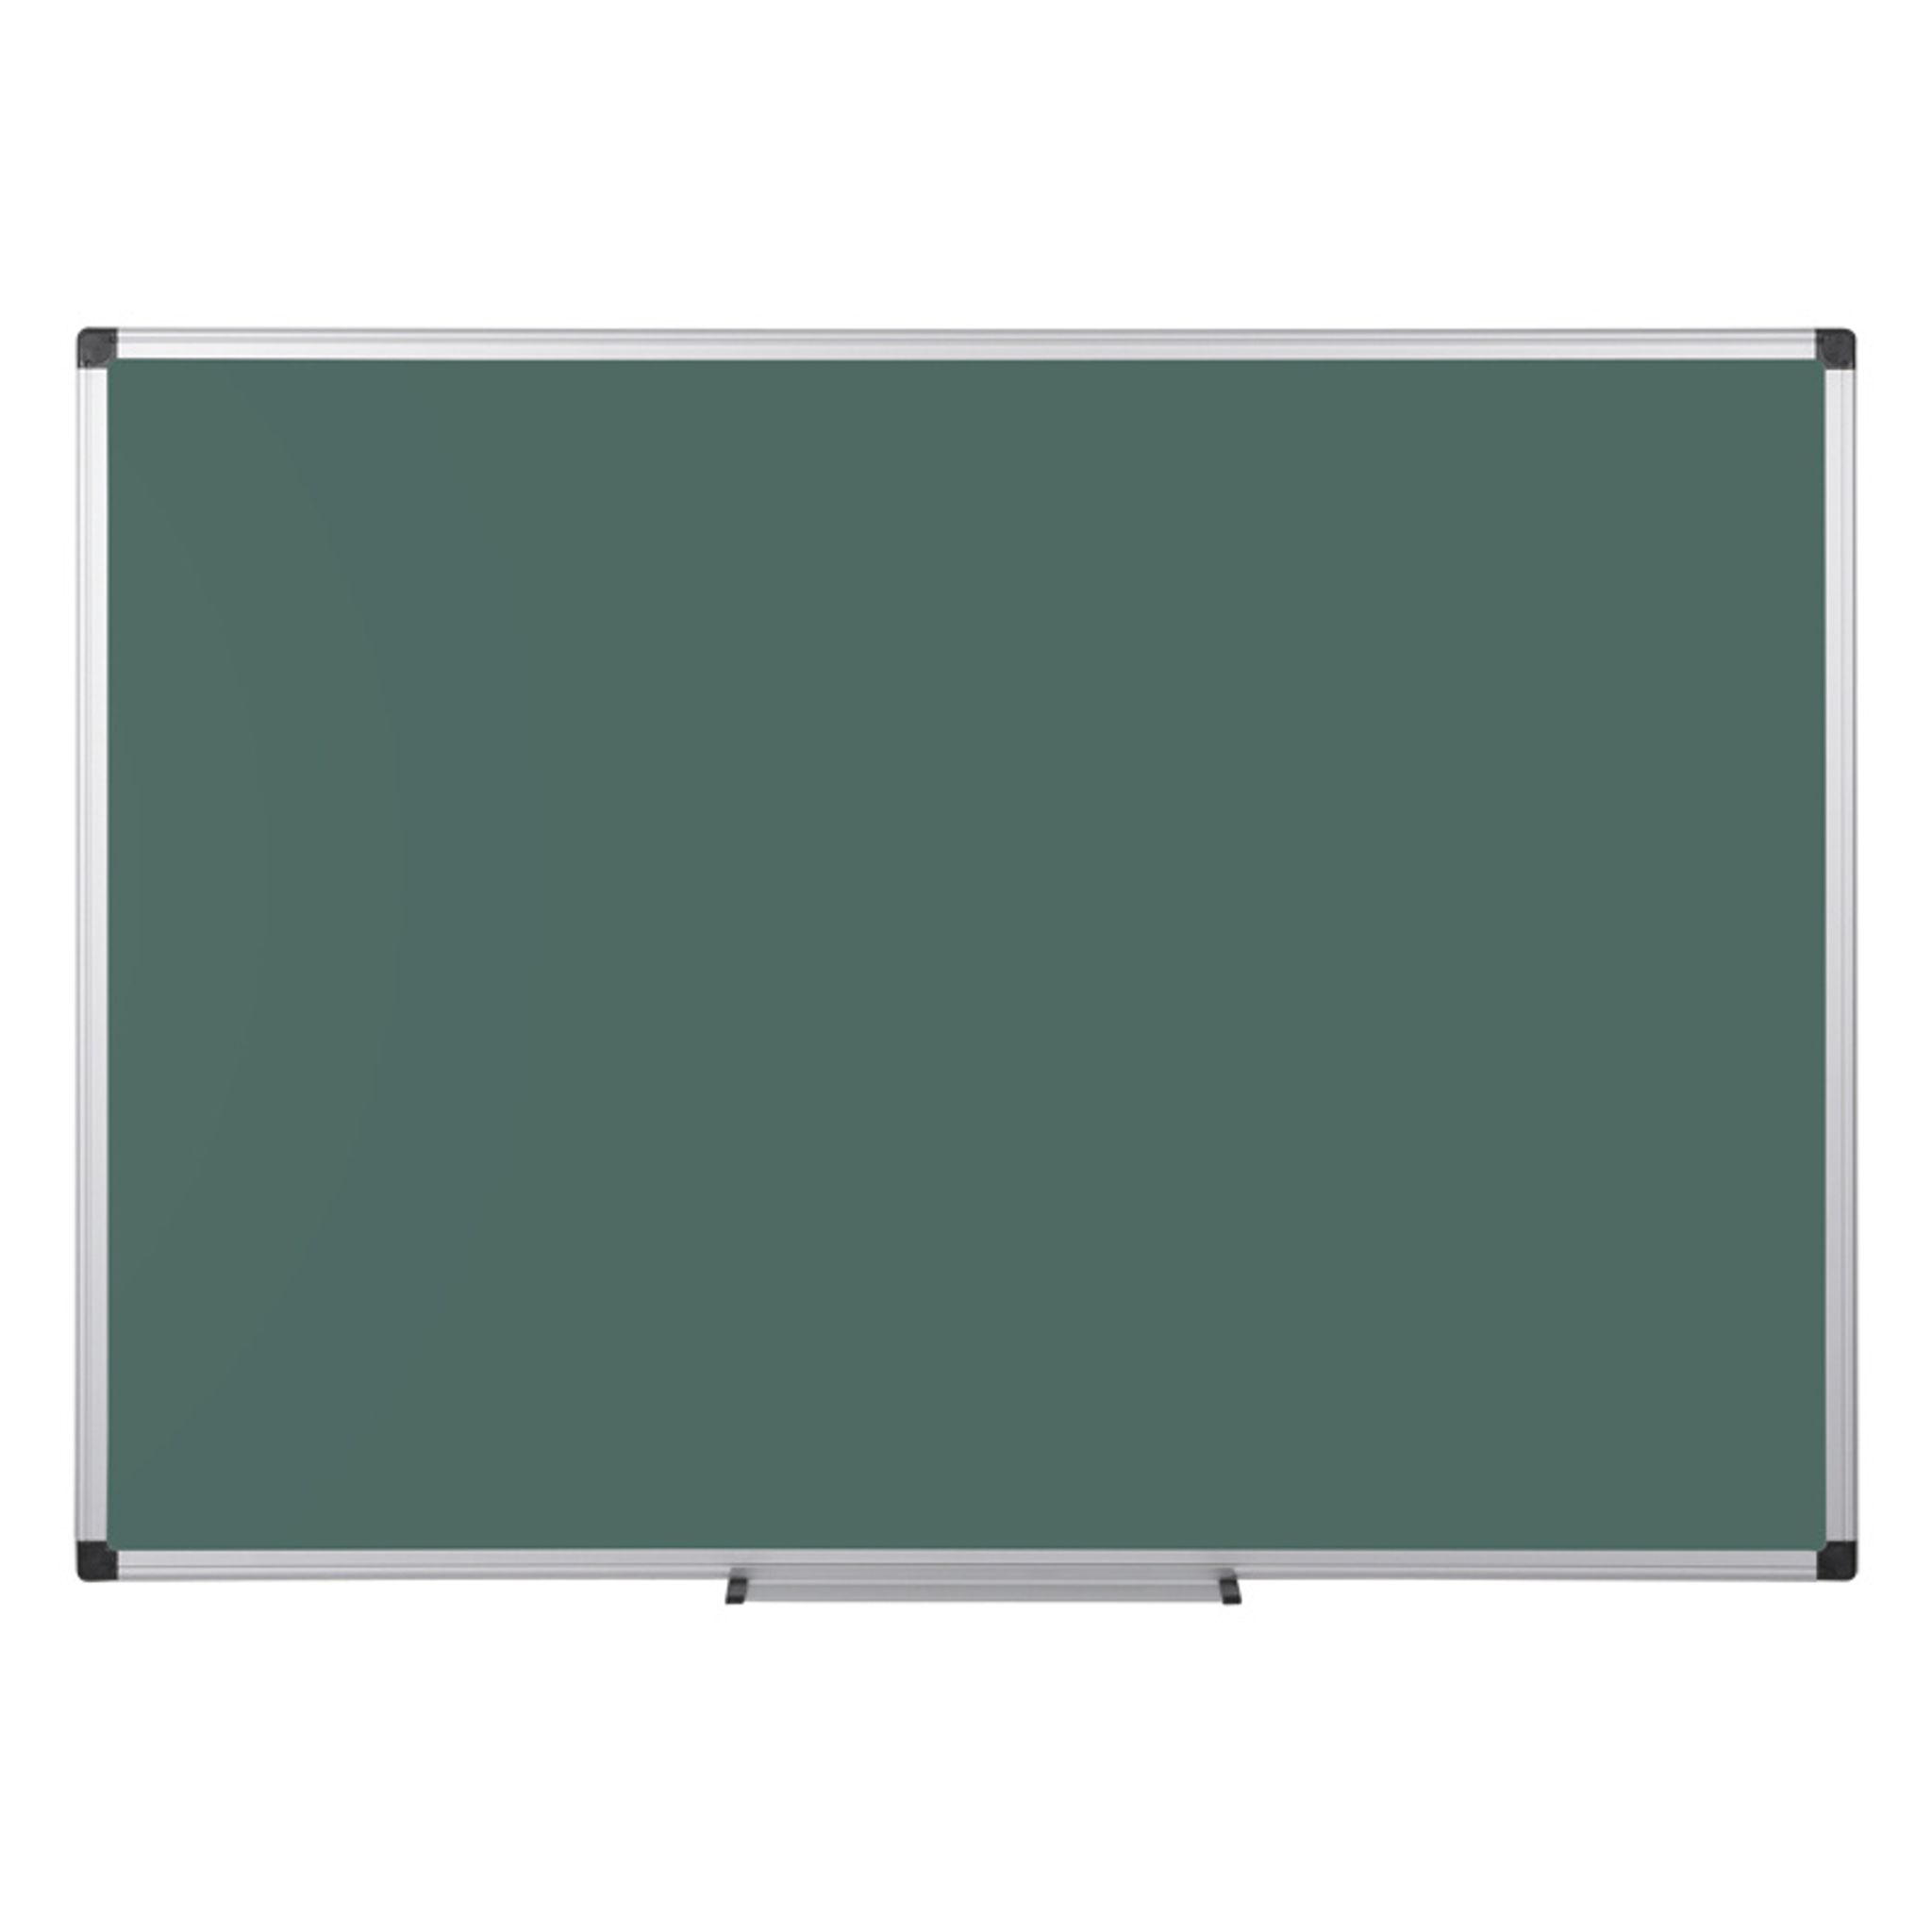 Zelená školní keramická popisovací tabule na zeď, magnetická, 1800 x 1200 mm